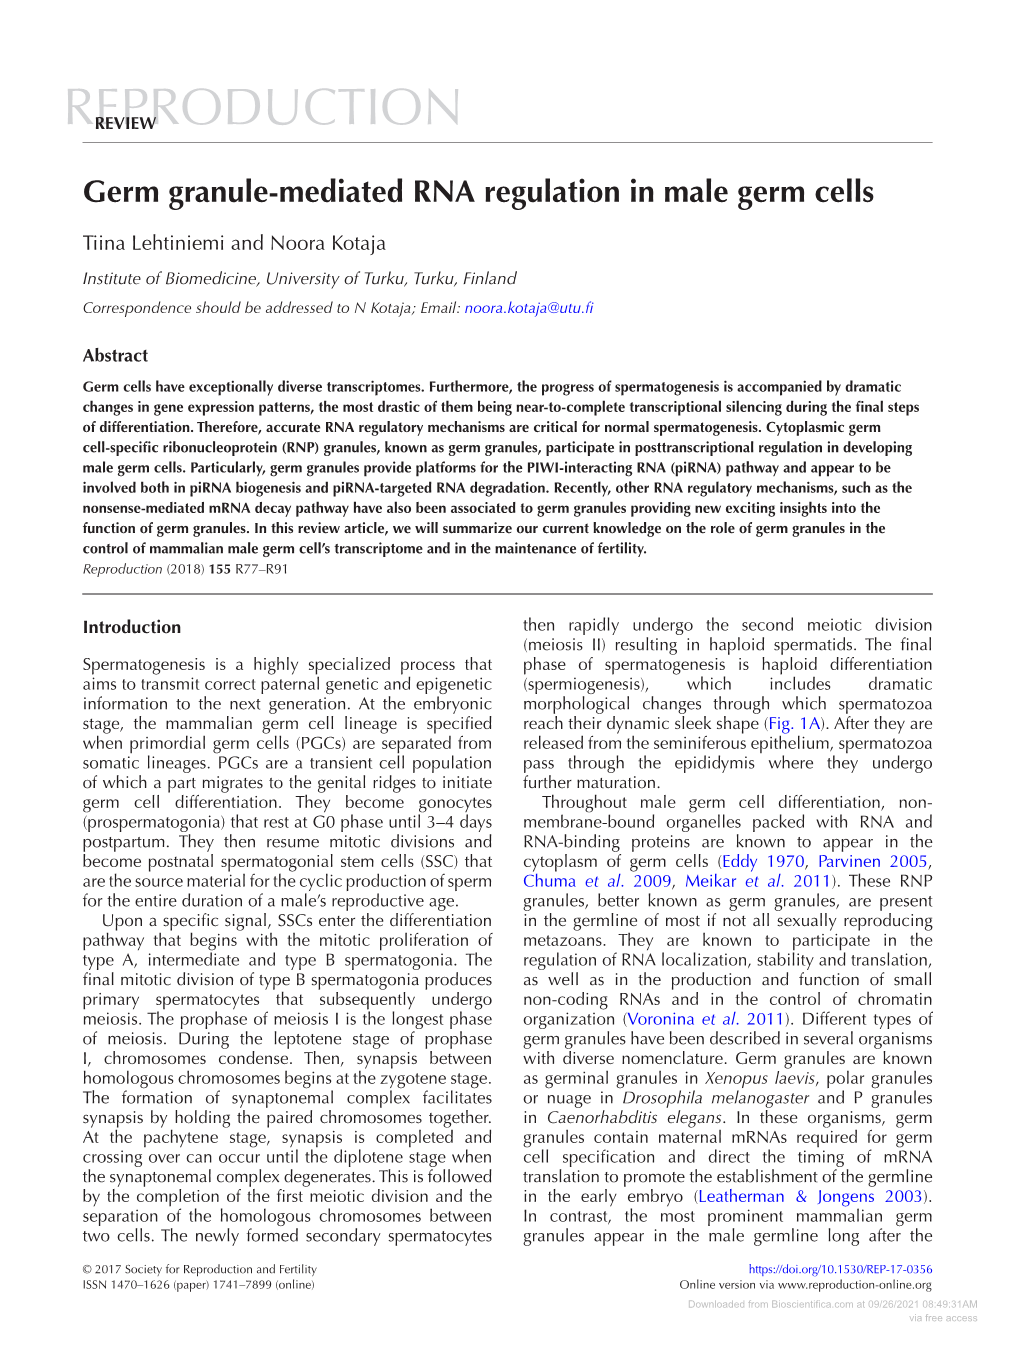 Germ Granule-Mediated RNA Regulation in Male Germ Cells